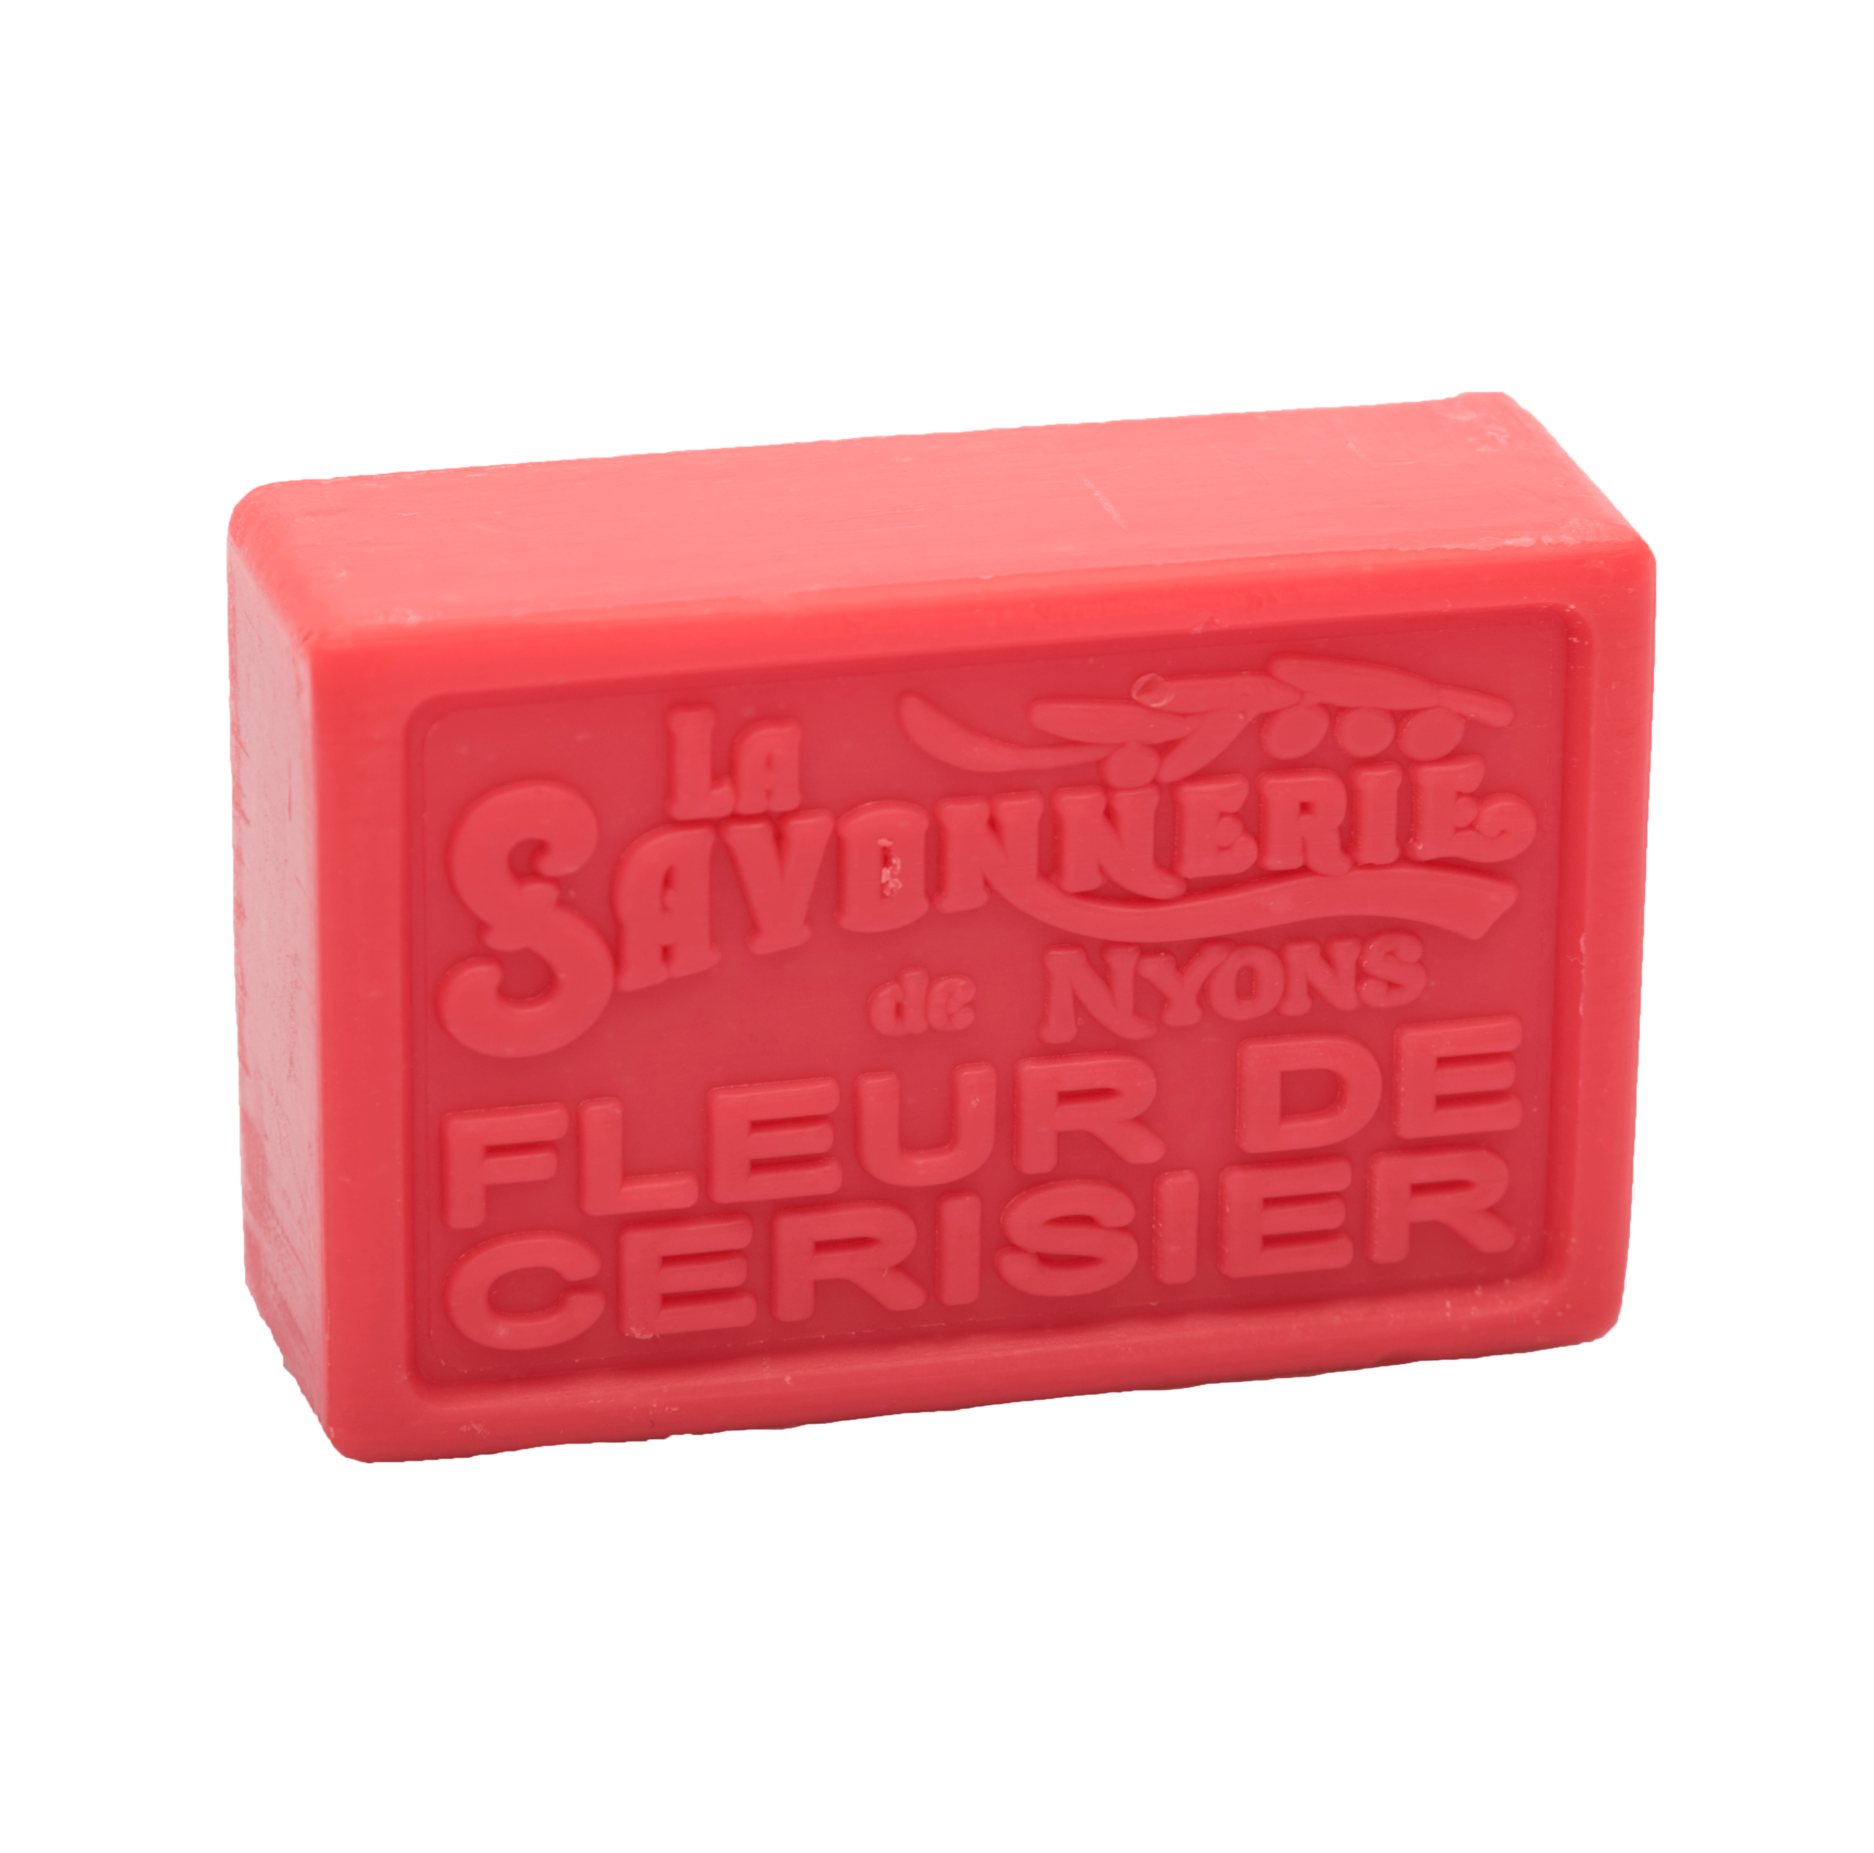 Red bar of soap with stamp reading La Savonnerie de Nyons Fleur de Cerisier.